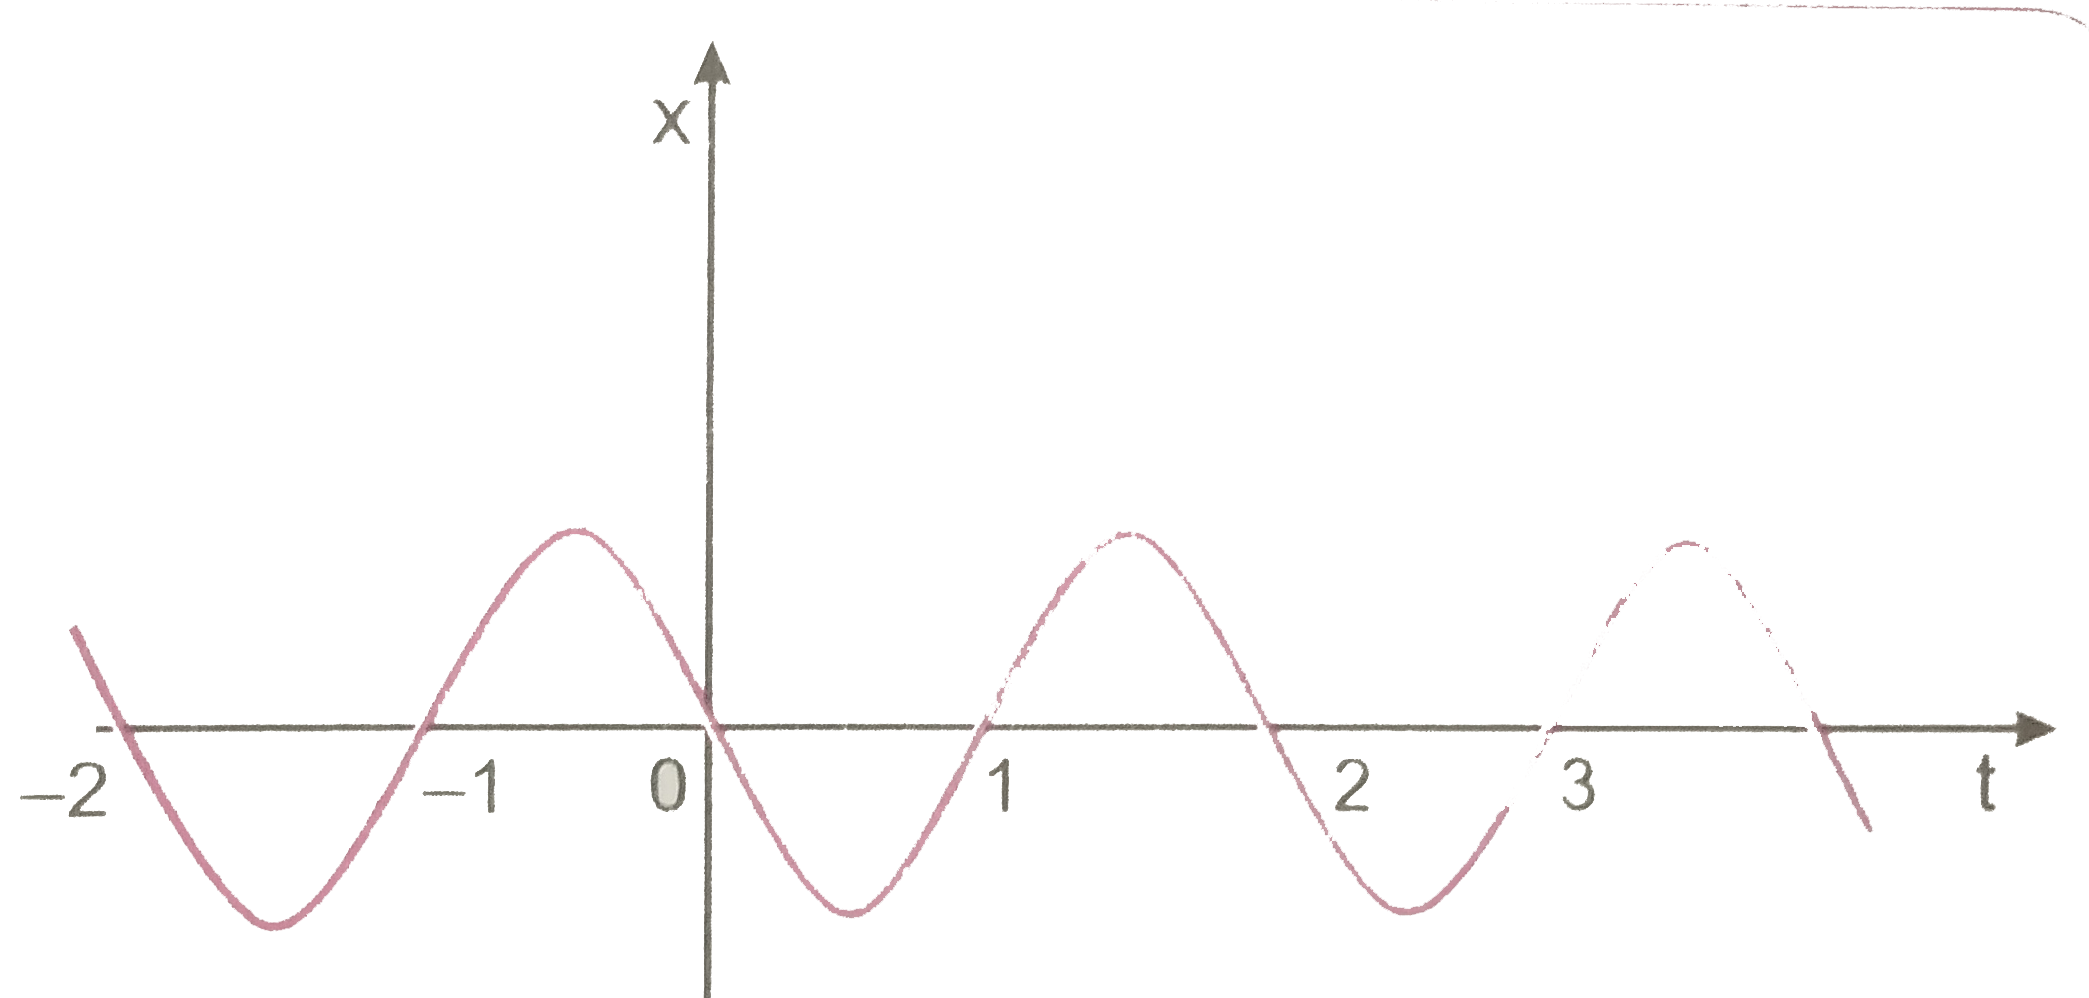 चित्र 3.54 में किसी कण की एकविमीय सरल आवर्ती गति के लिए x-t ग्राफ दिखाया गया है (इस गति के बारे में आप अध्याय 14 में पढ़ेंगे) समय t=0*3 सेकण्ड पर कण के स्थिति वेग व त्वरण के चिन्ह क्या होंगे ?